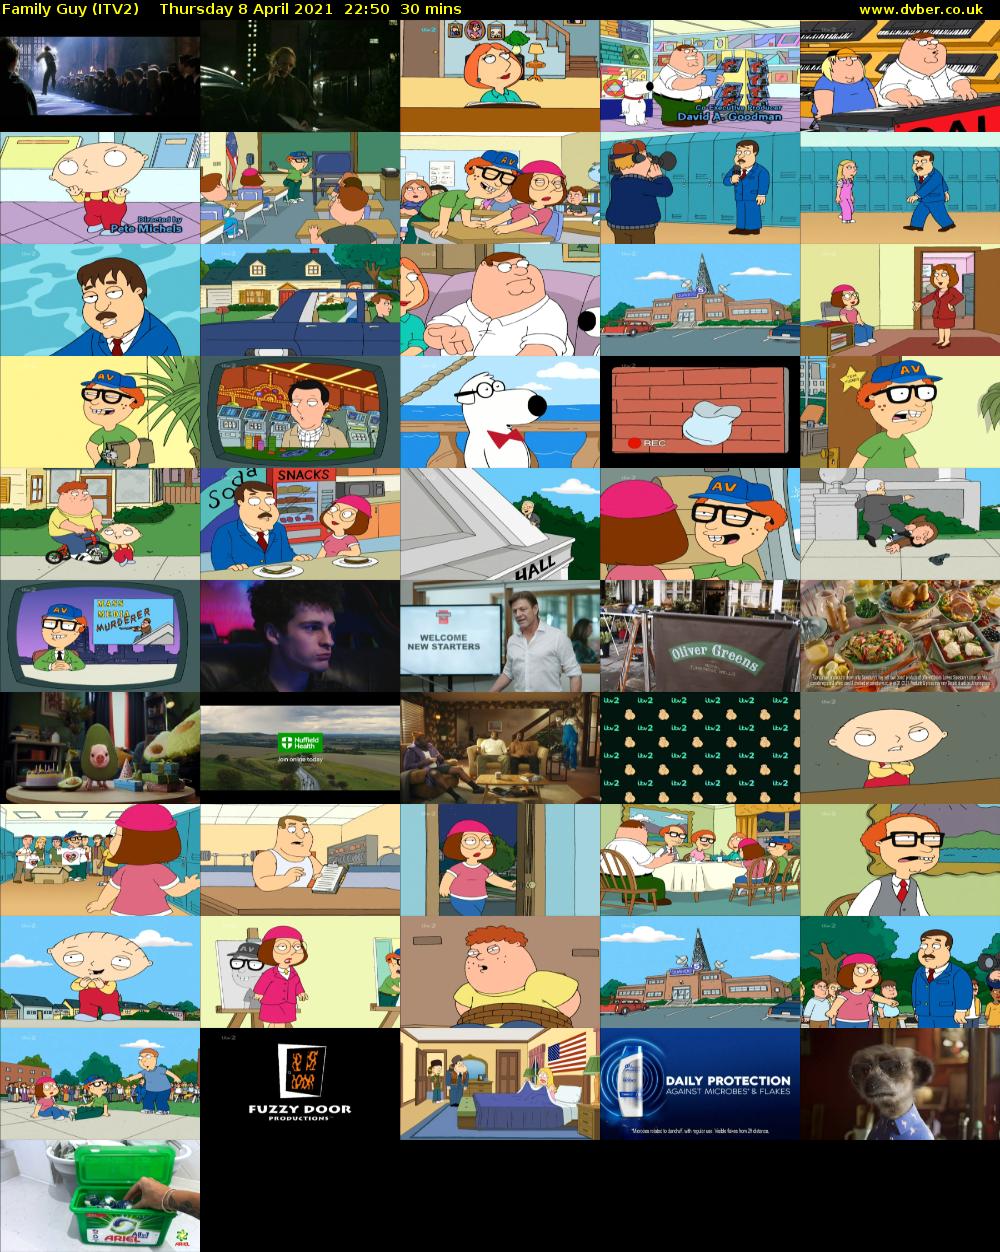 Family Guy (ITV2) Thursday 8 April 2021 22:50 - 23:20